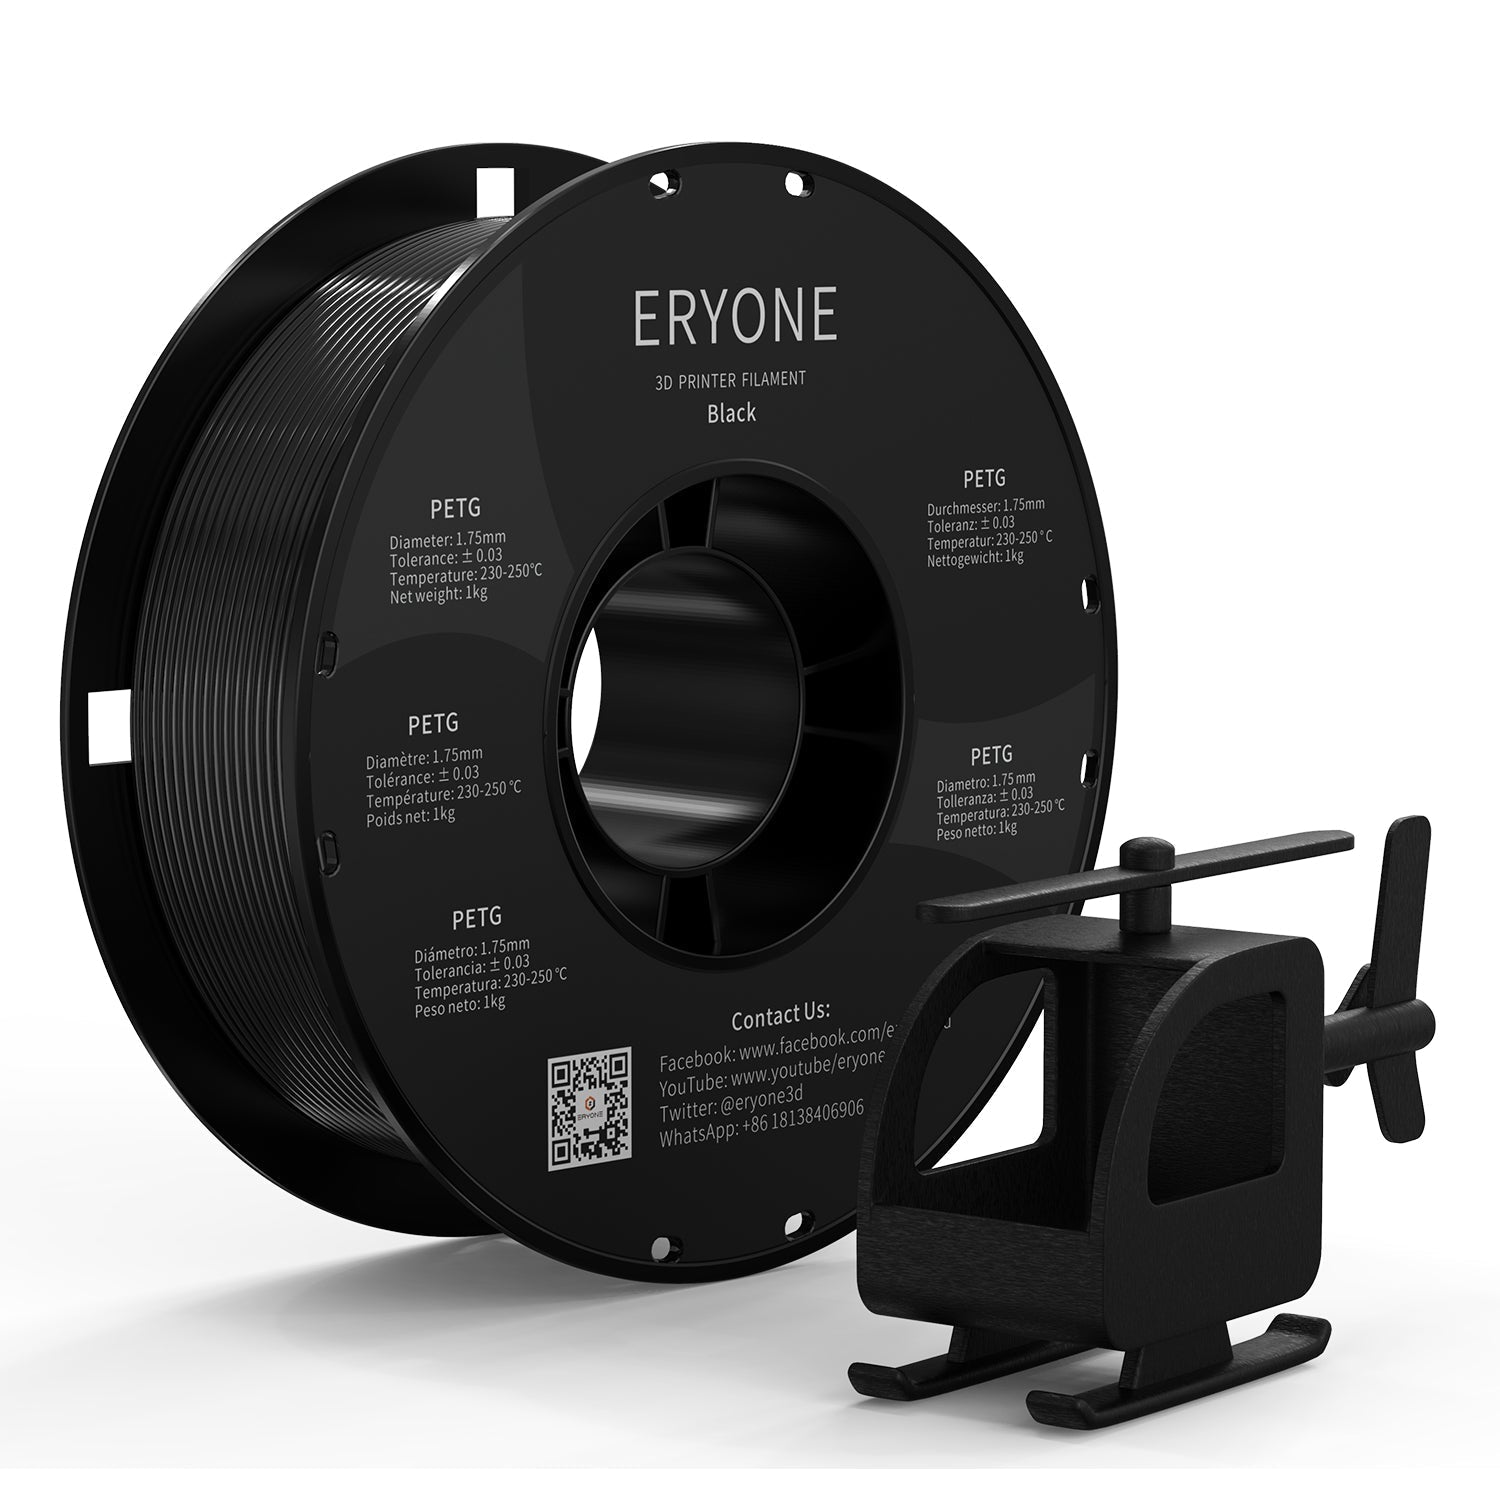 ERYONE Filamento PETG, 1.75mm ±0.03mm Filamento para Impresora 3D, 1KG(2.2LBS)/ Carrete